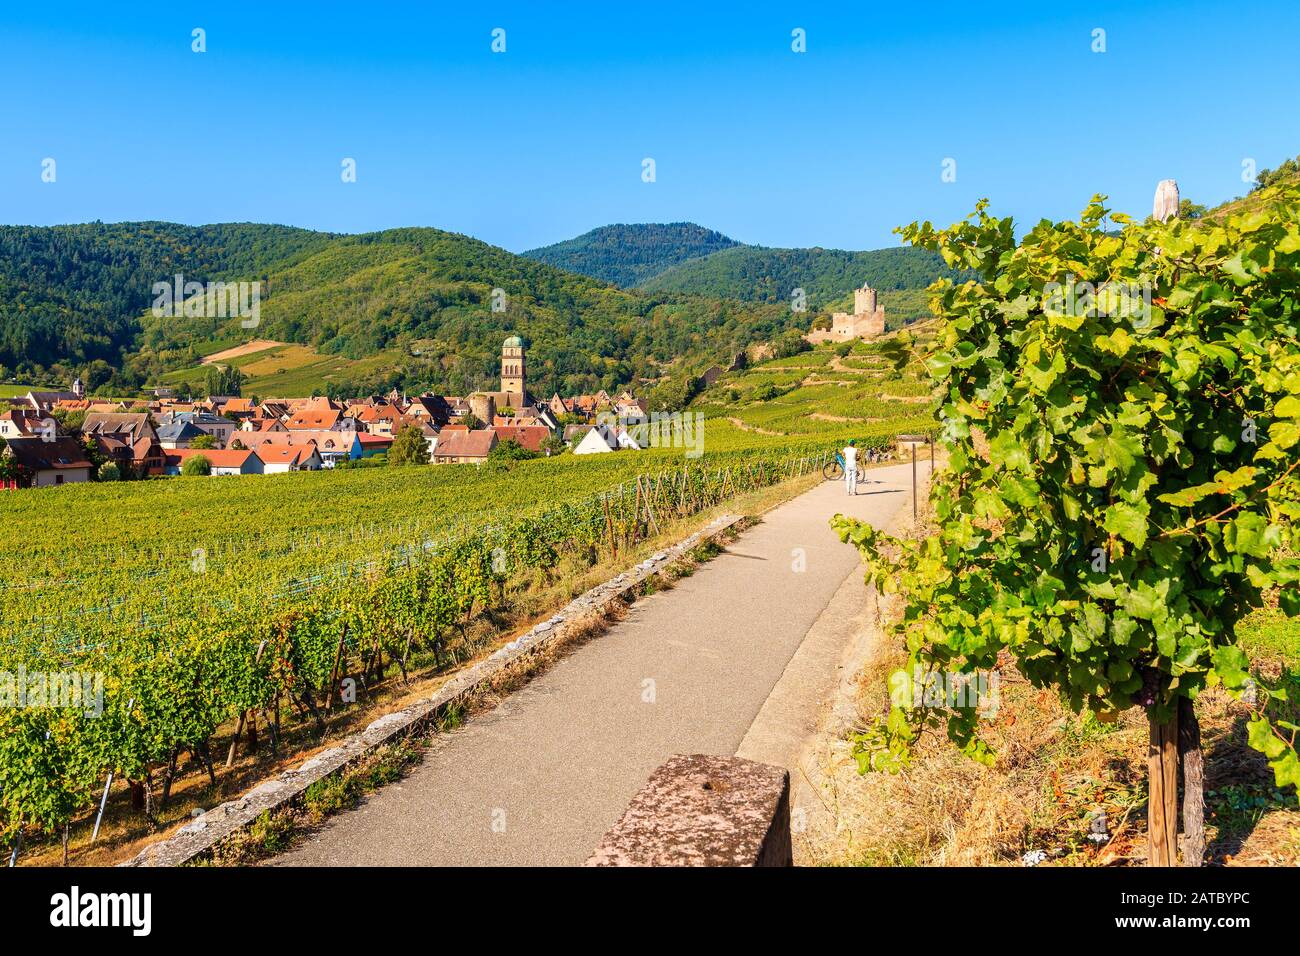 Carretera a lo largo de los viñedos de Kaysersberg village, Ruta del Vino de Alsacia, Francia Foto de stock